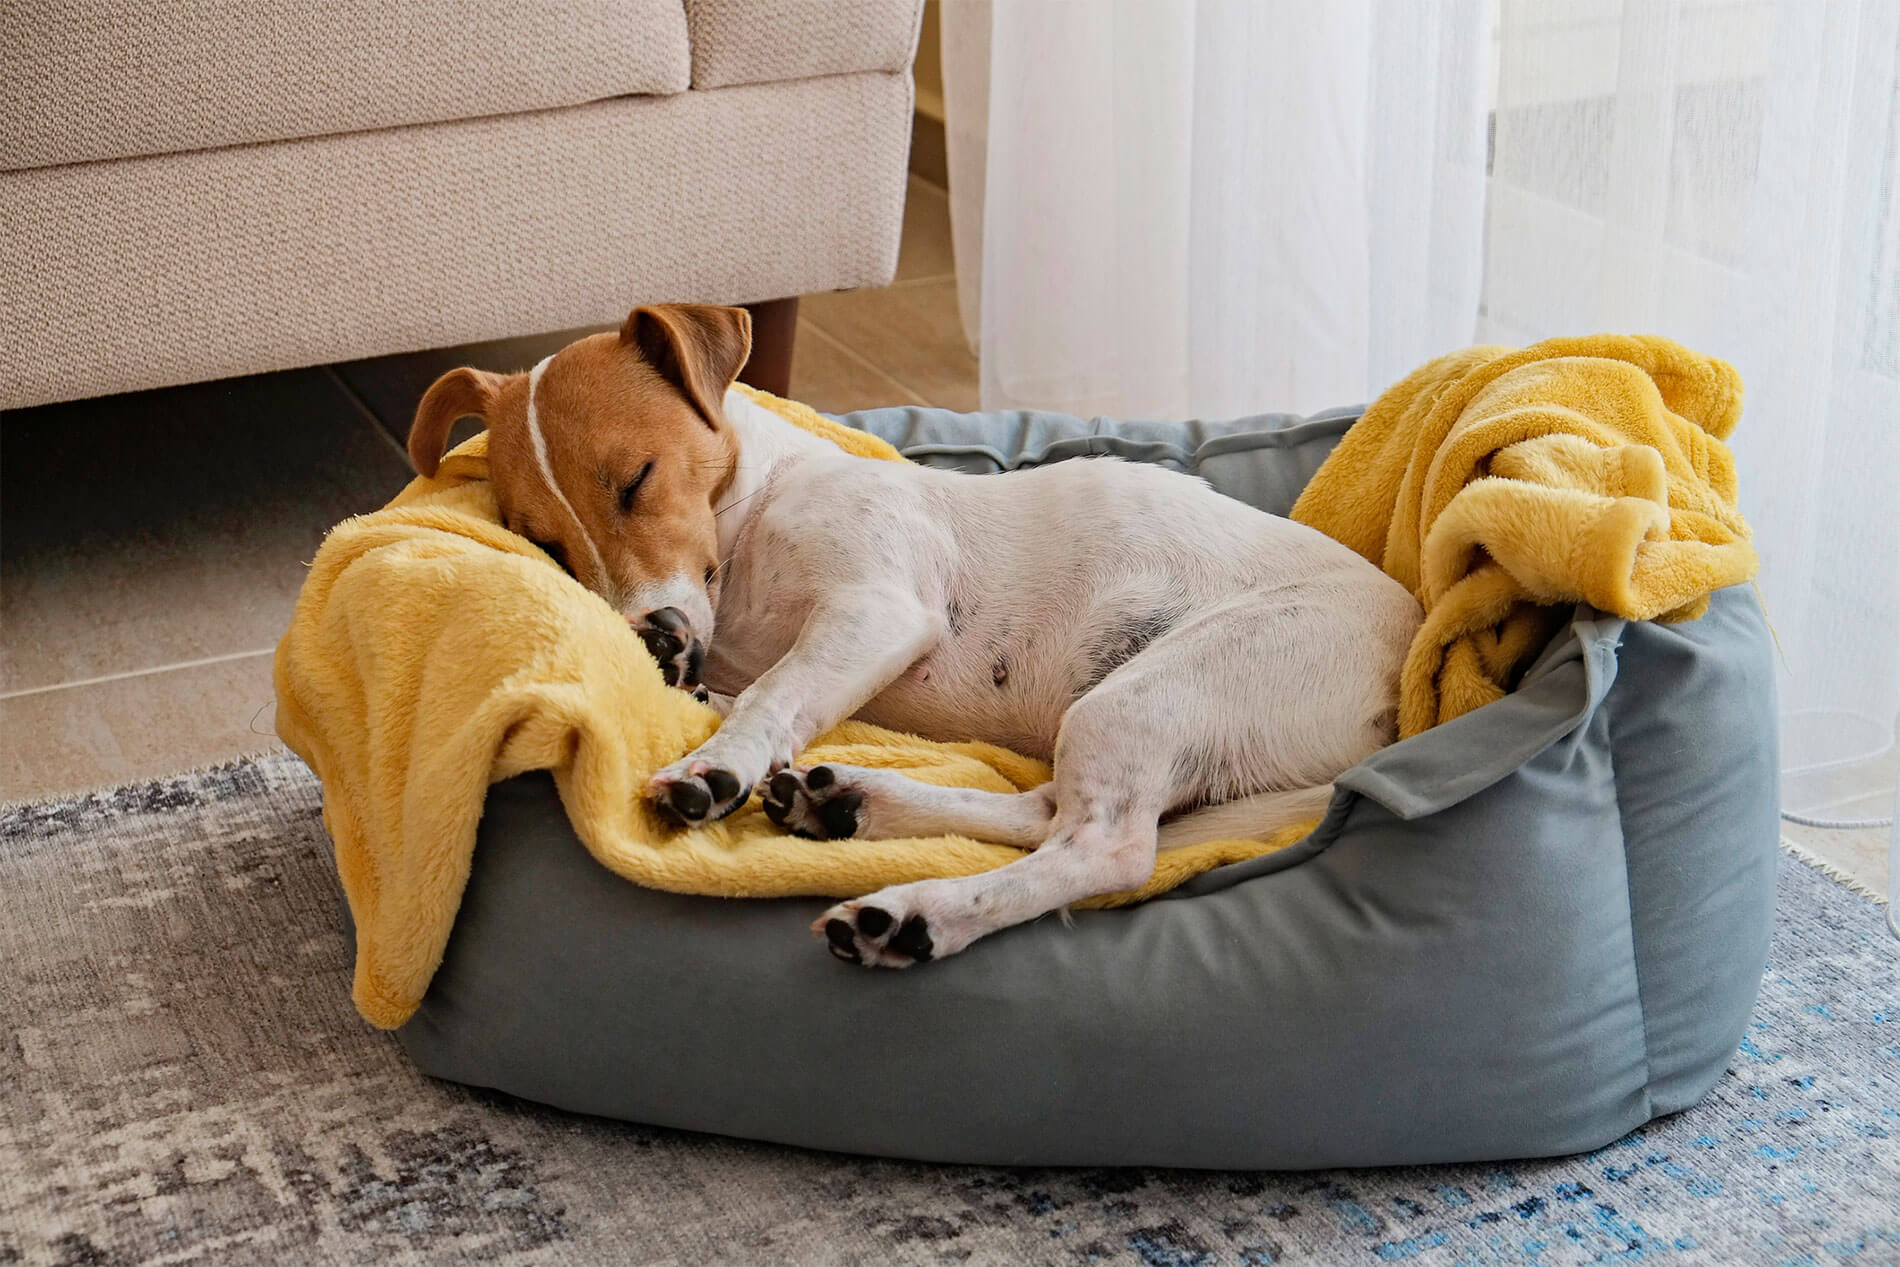 Sleeping dog in dog bed